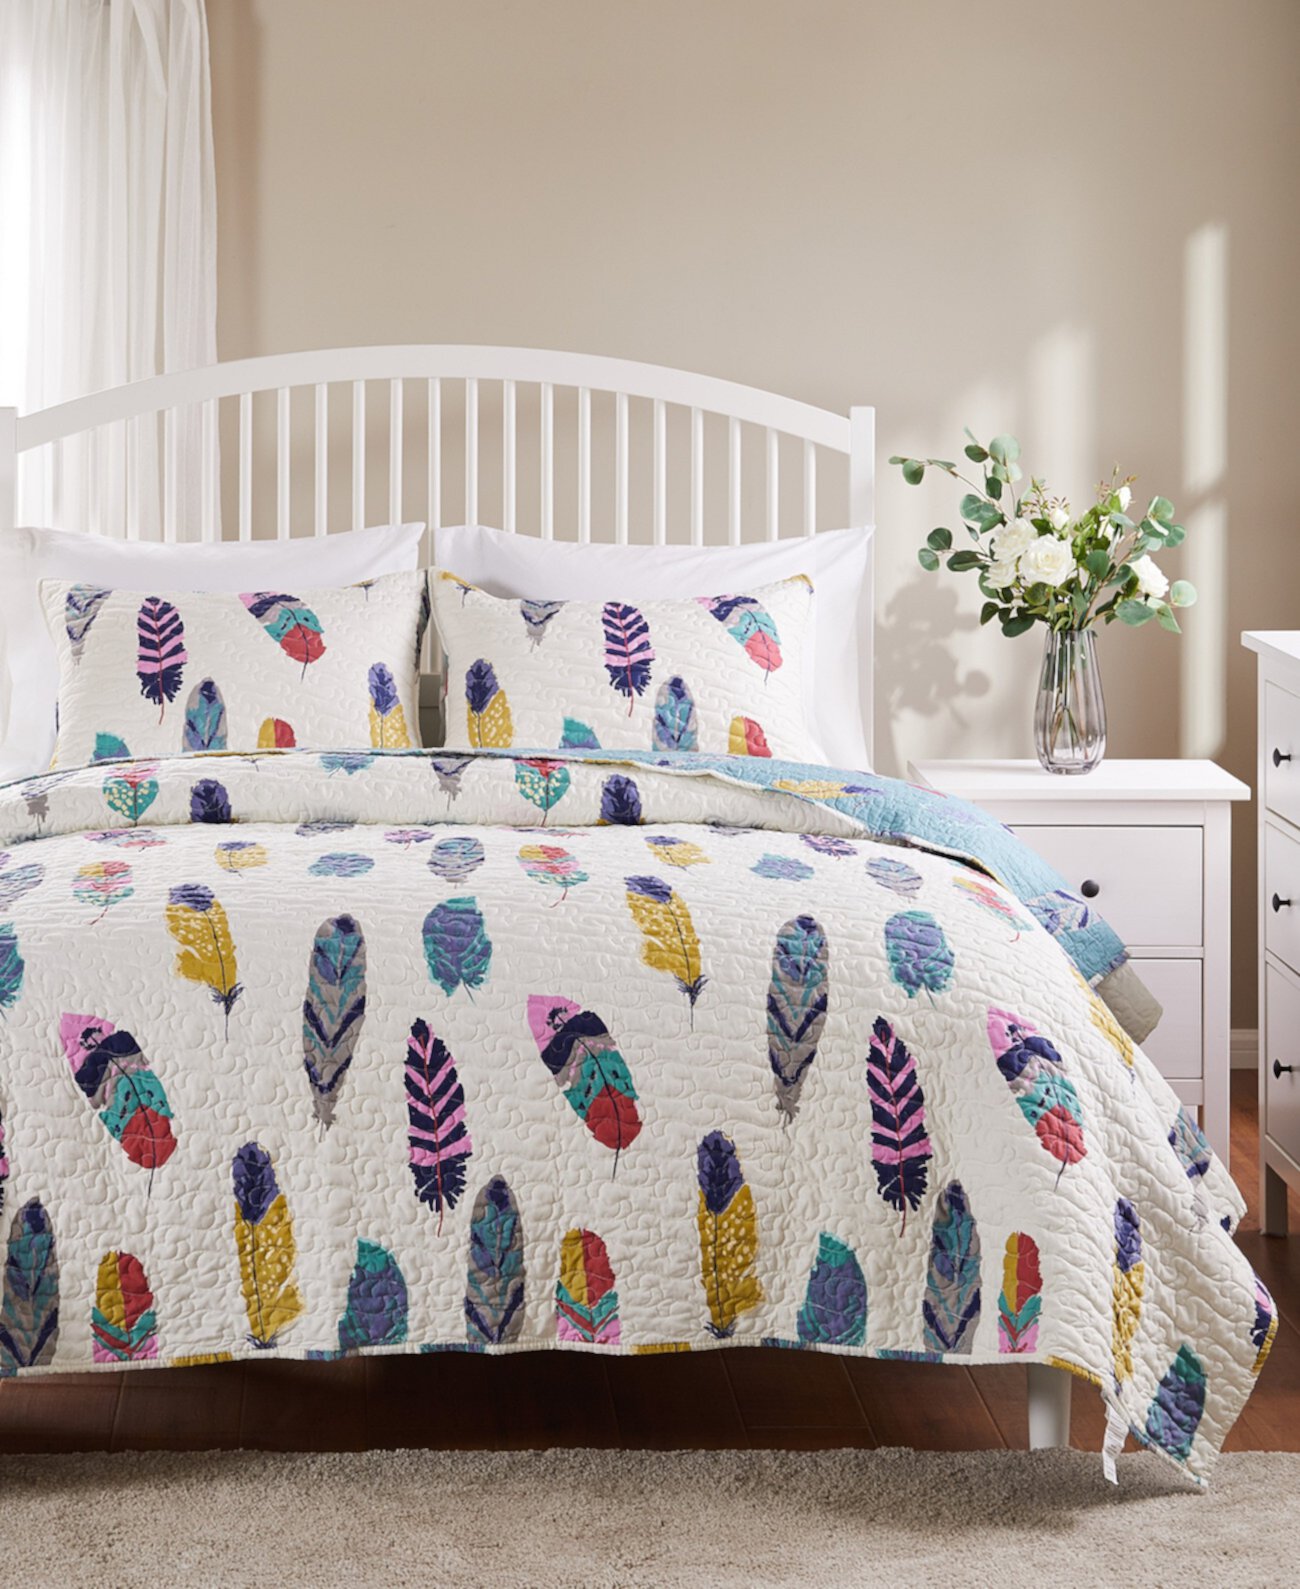 Комплект одеяла Ловец снов, двухкомпонентное двойное одеяло Greenland Home Fashions